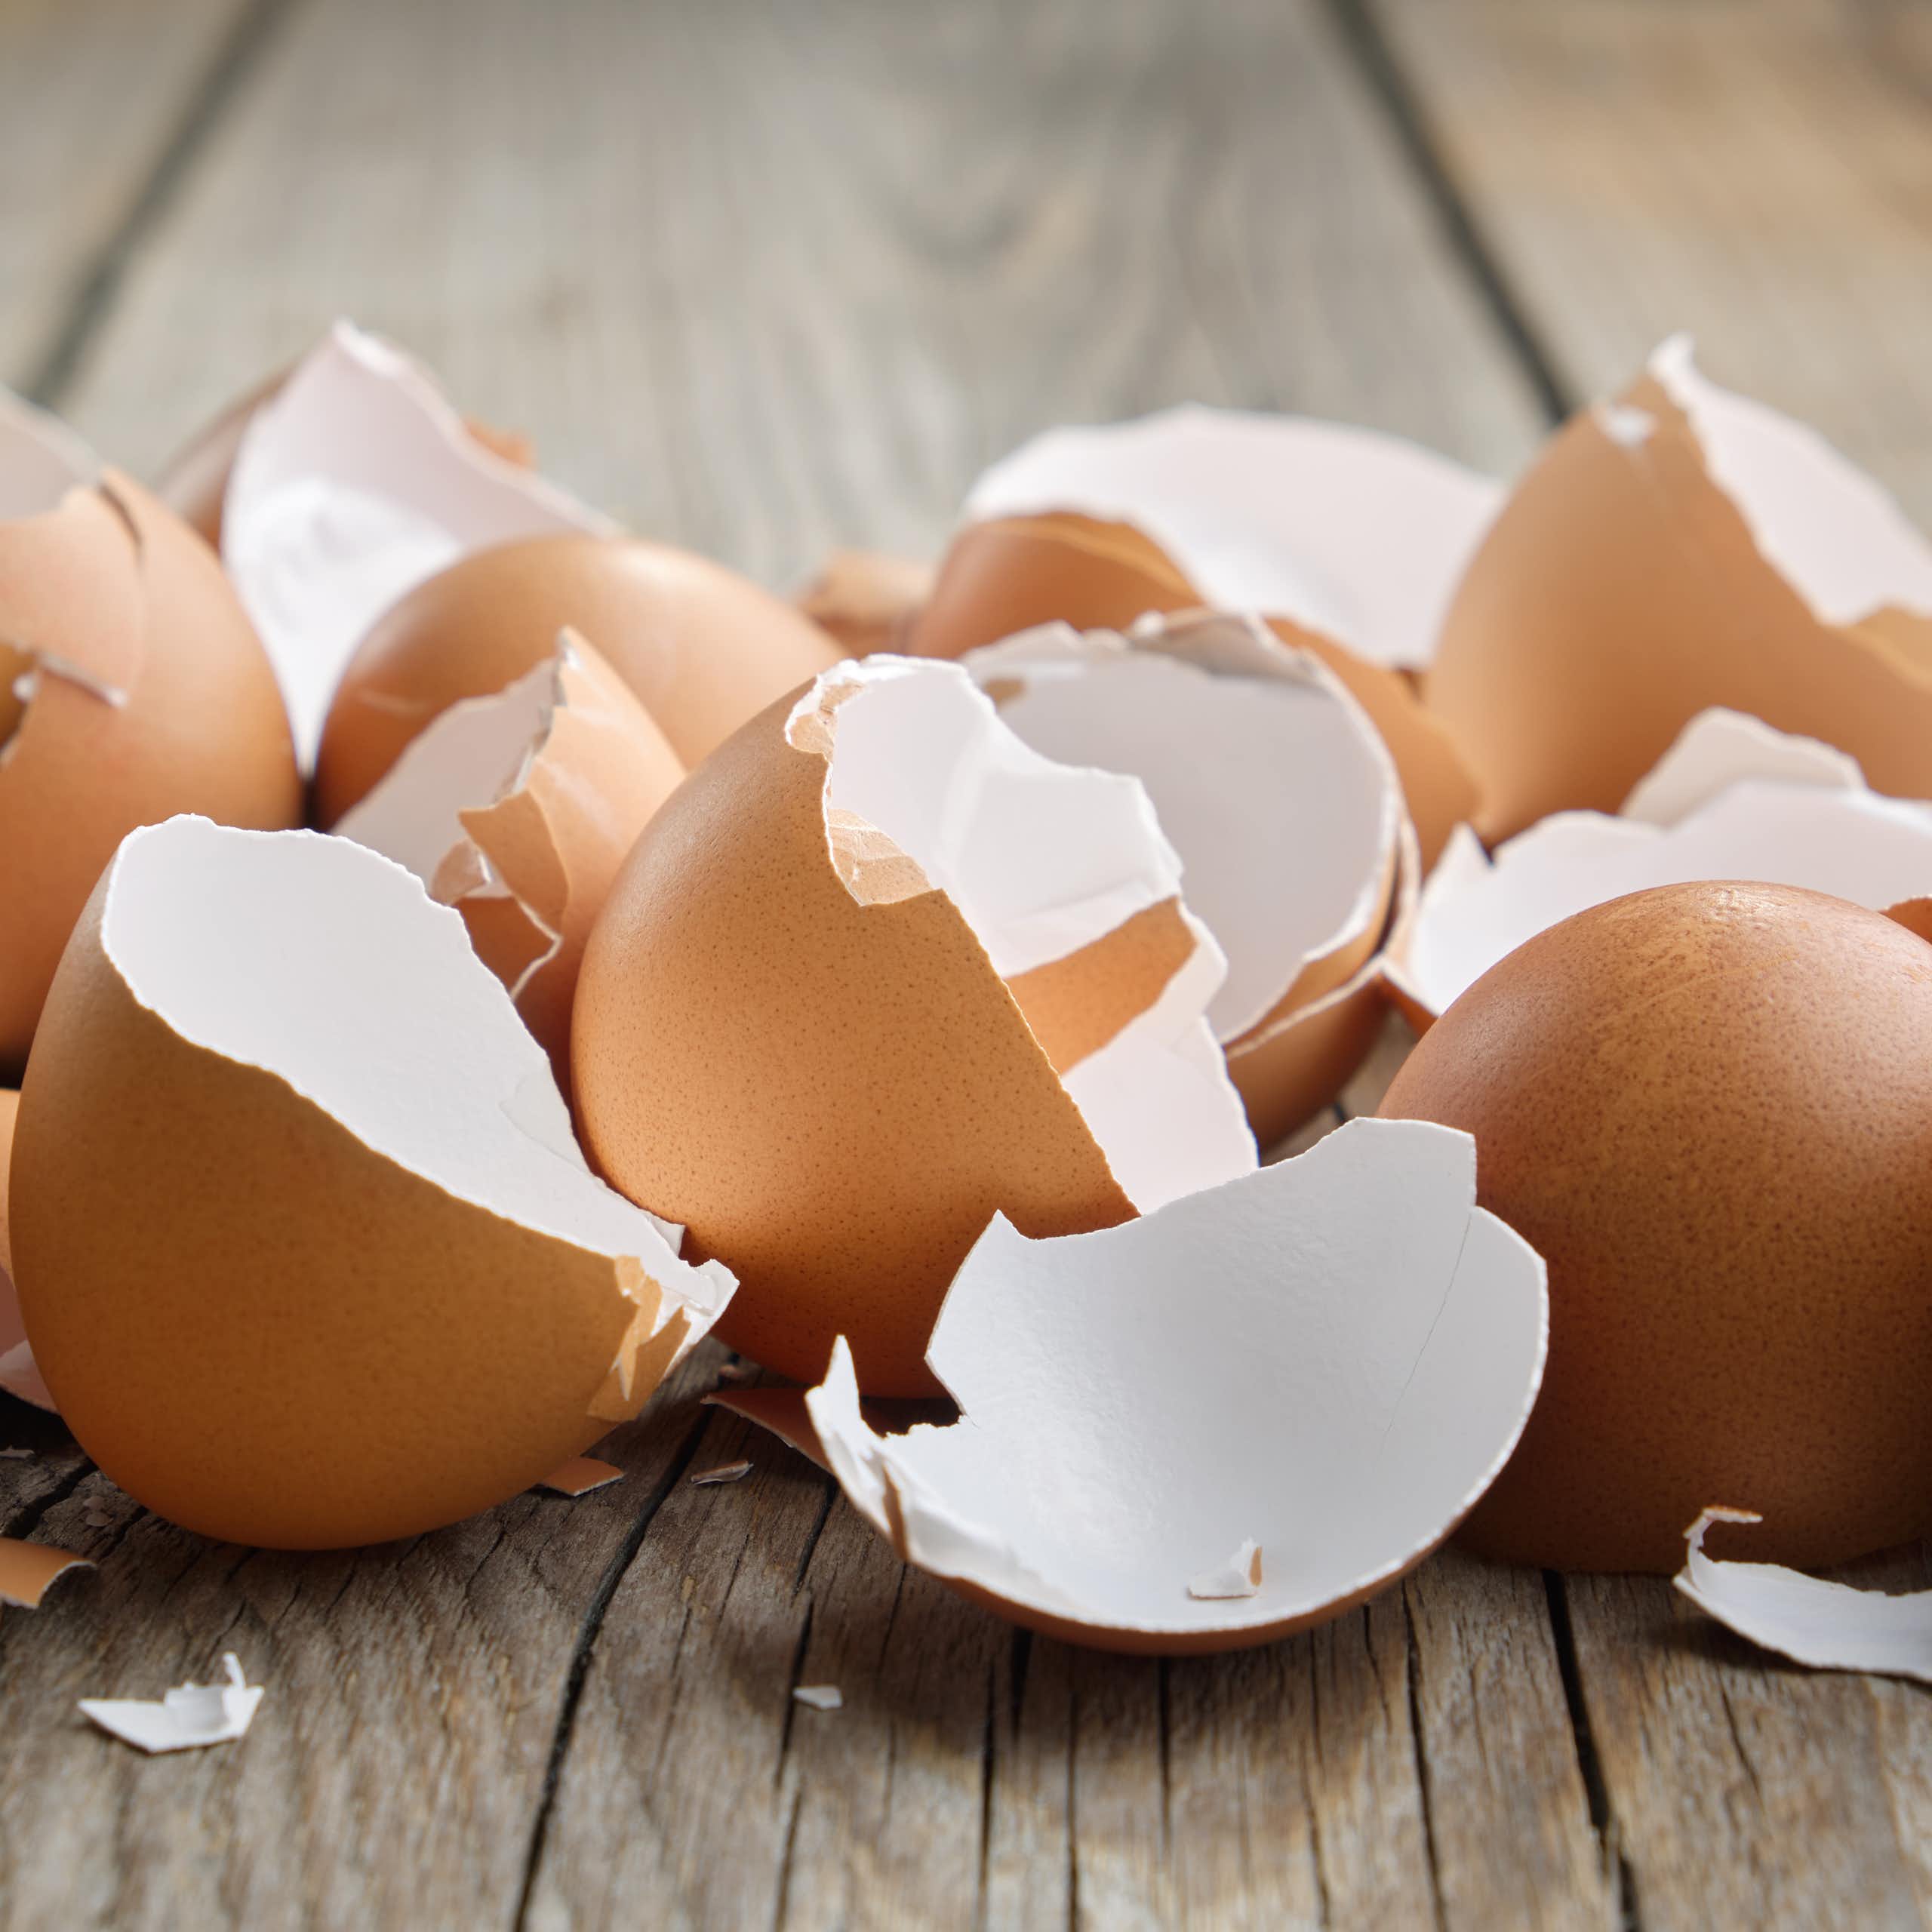 Manfaat biomedis yang mengejutkan dari cangkang telur